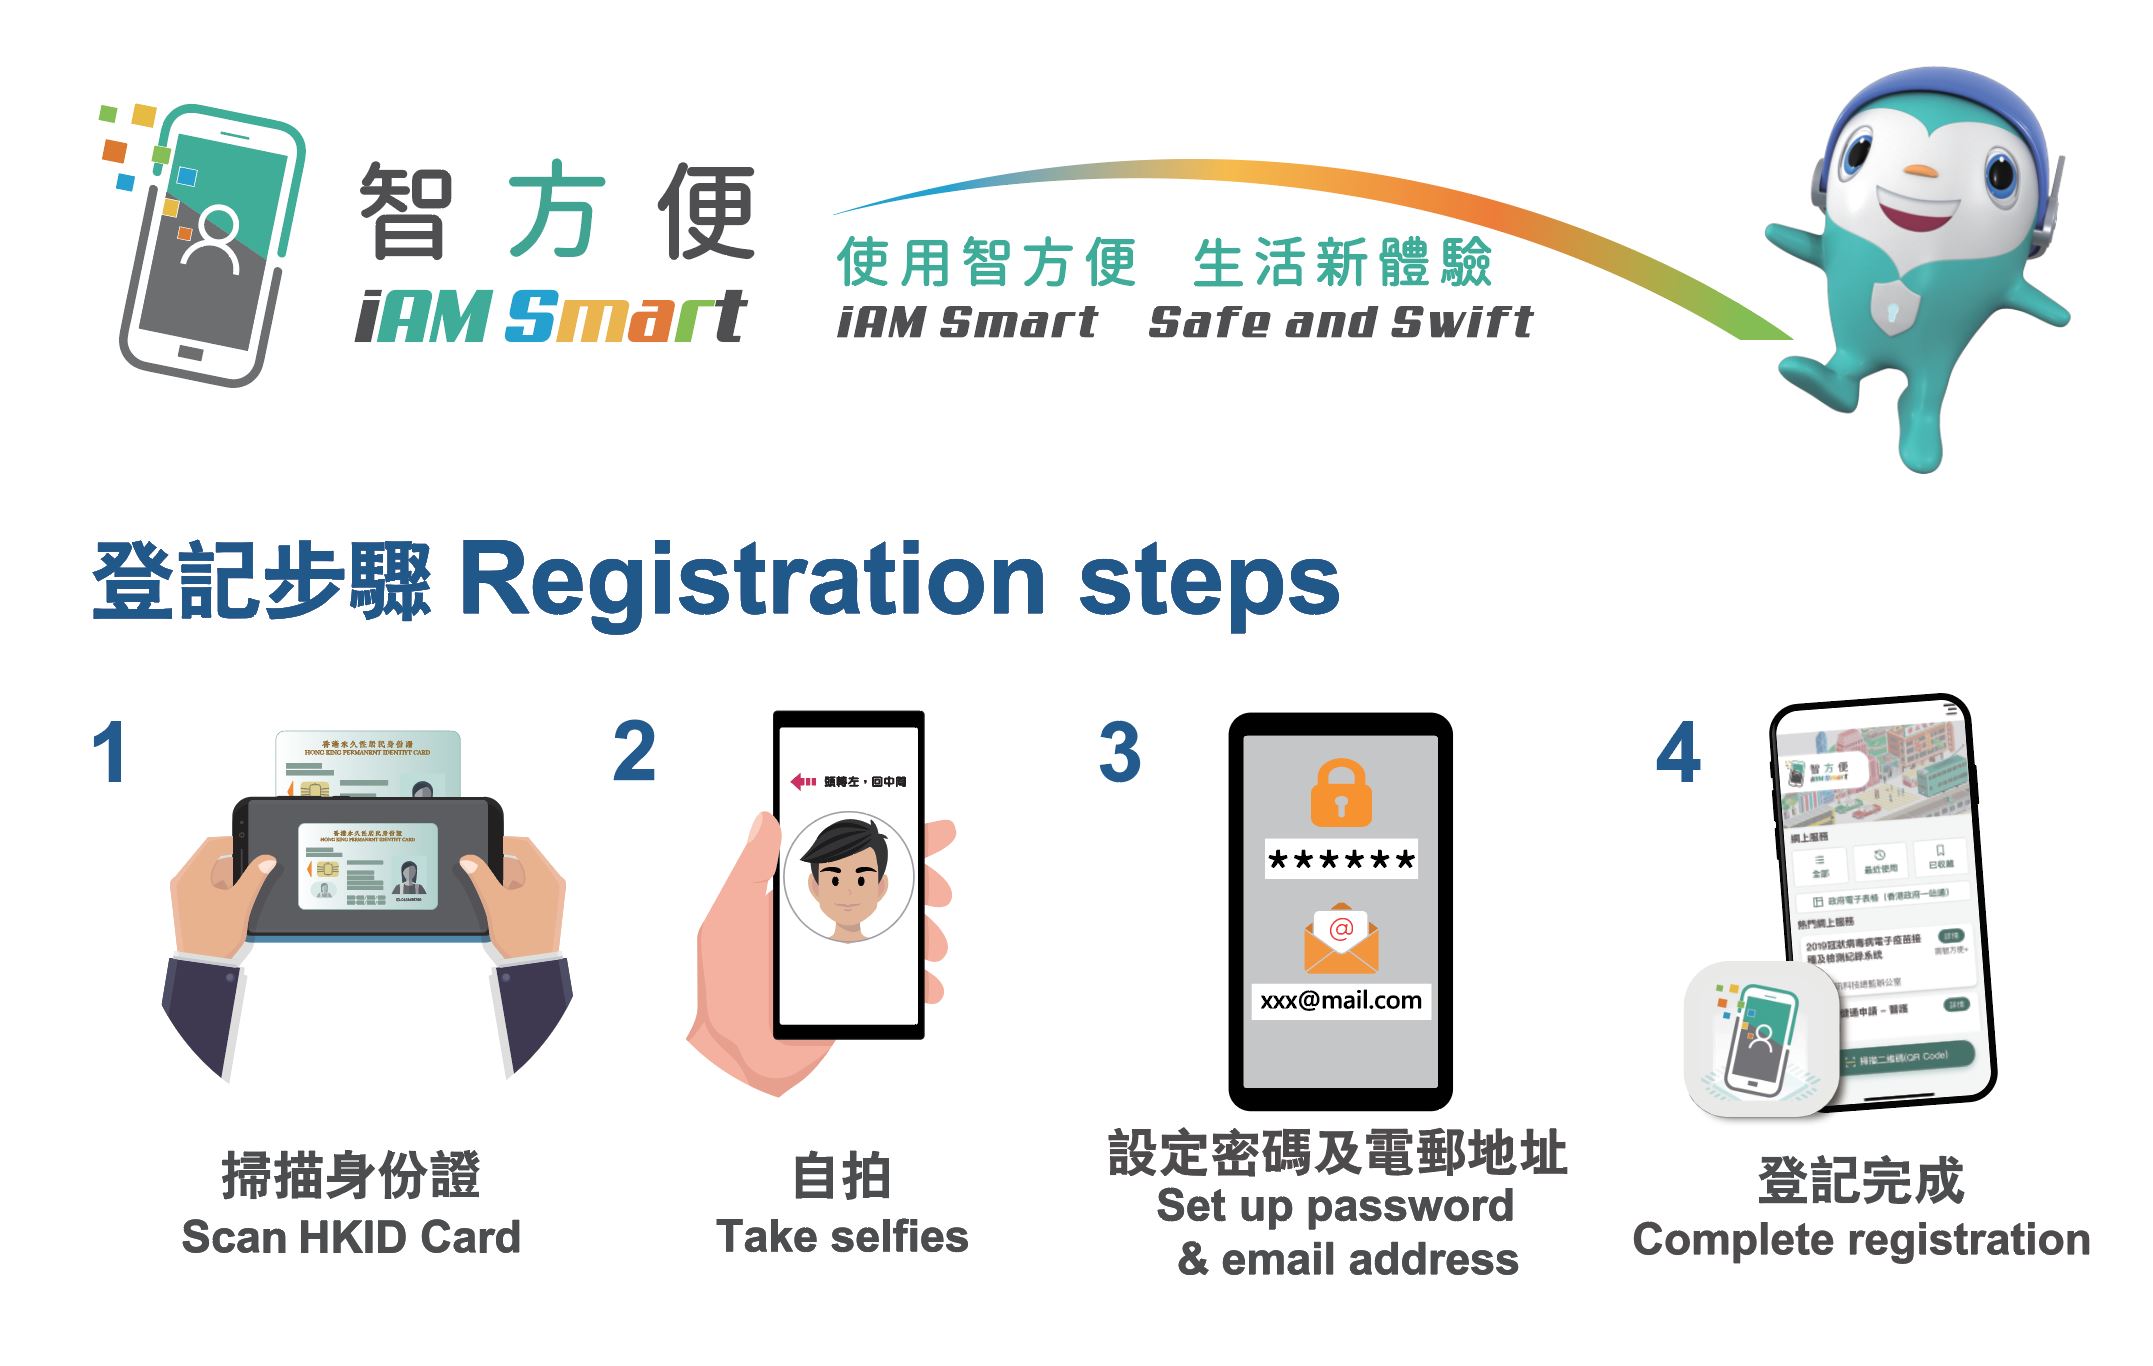 iAM Smart I AM smart Safe and Swift - Registration steps,
								1. Scan HKID Card.
								2. Take Selfies.
								3. Set up password & email address.
								4. Complete registration